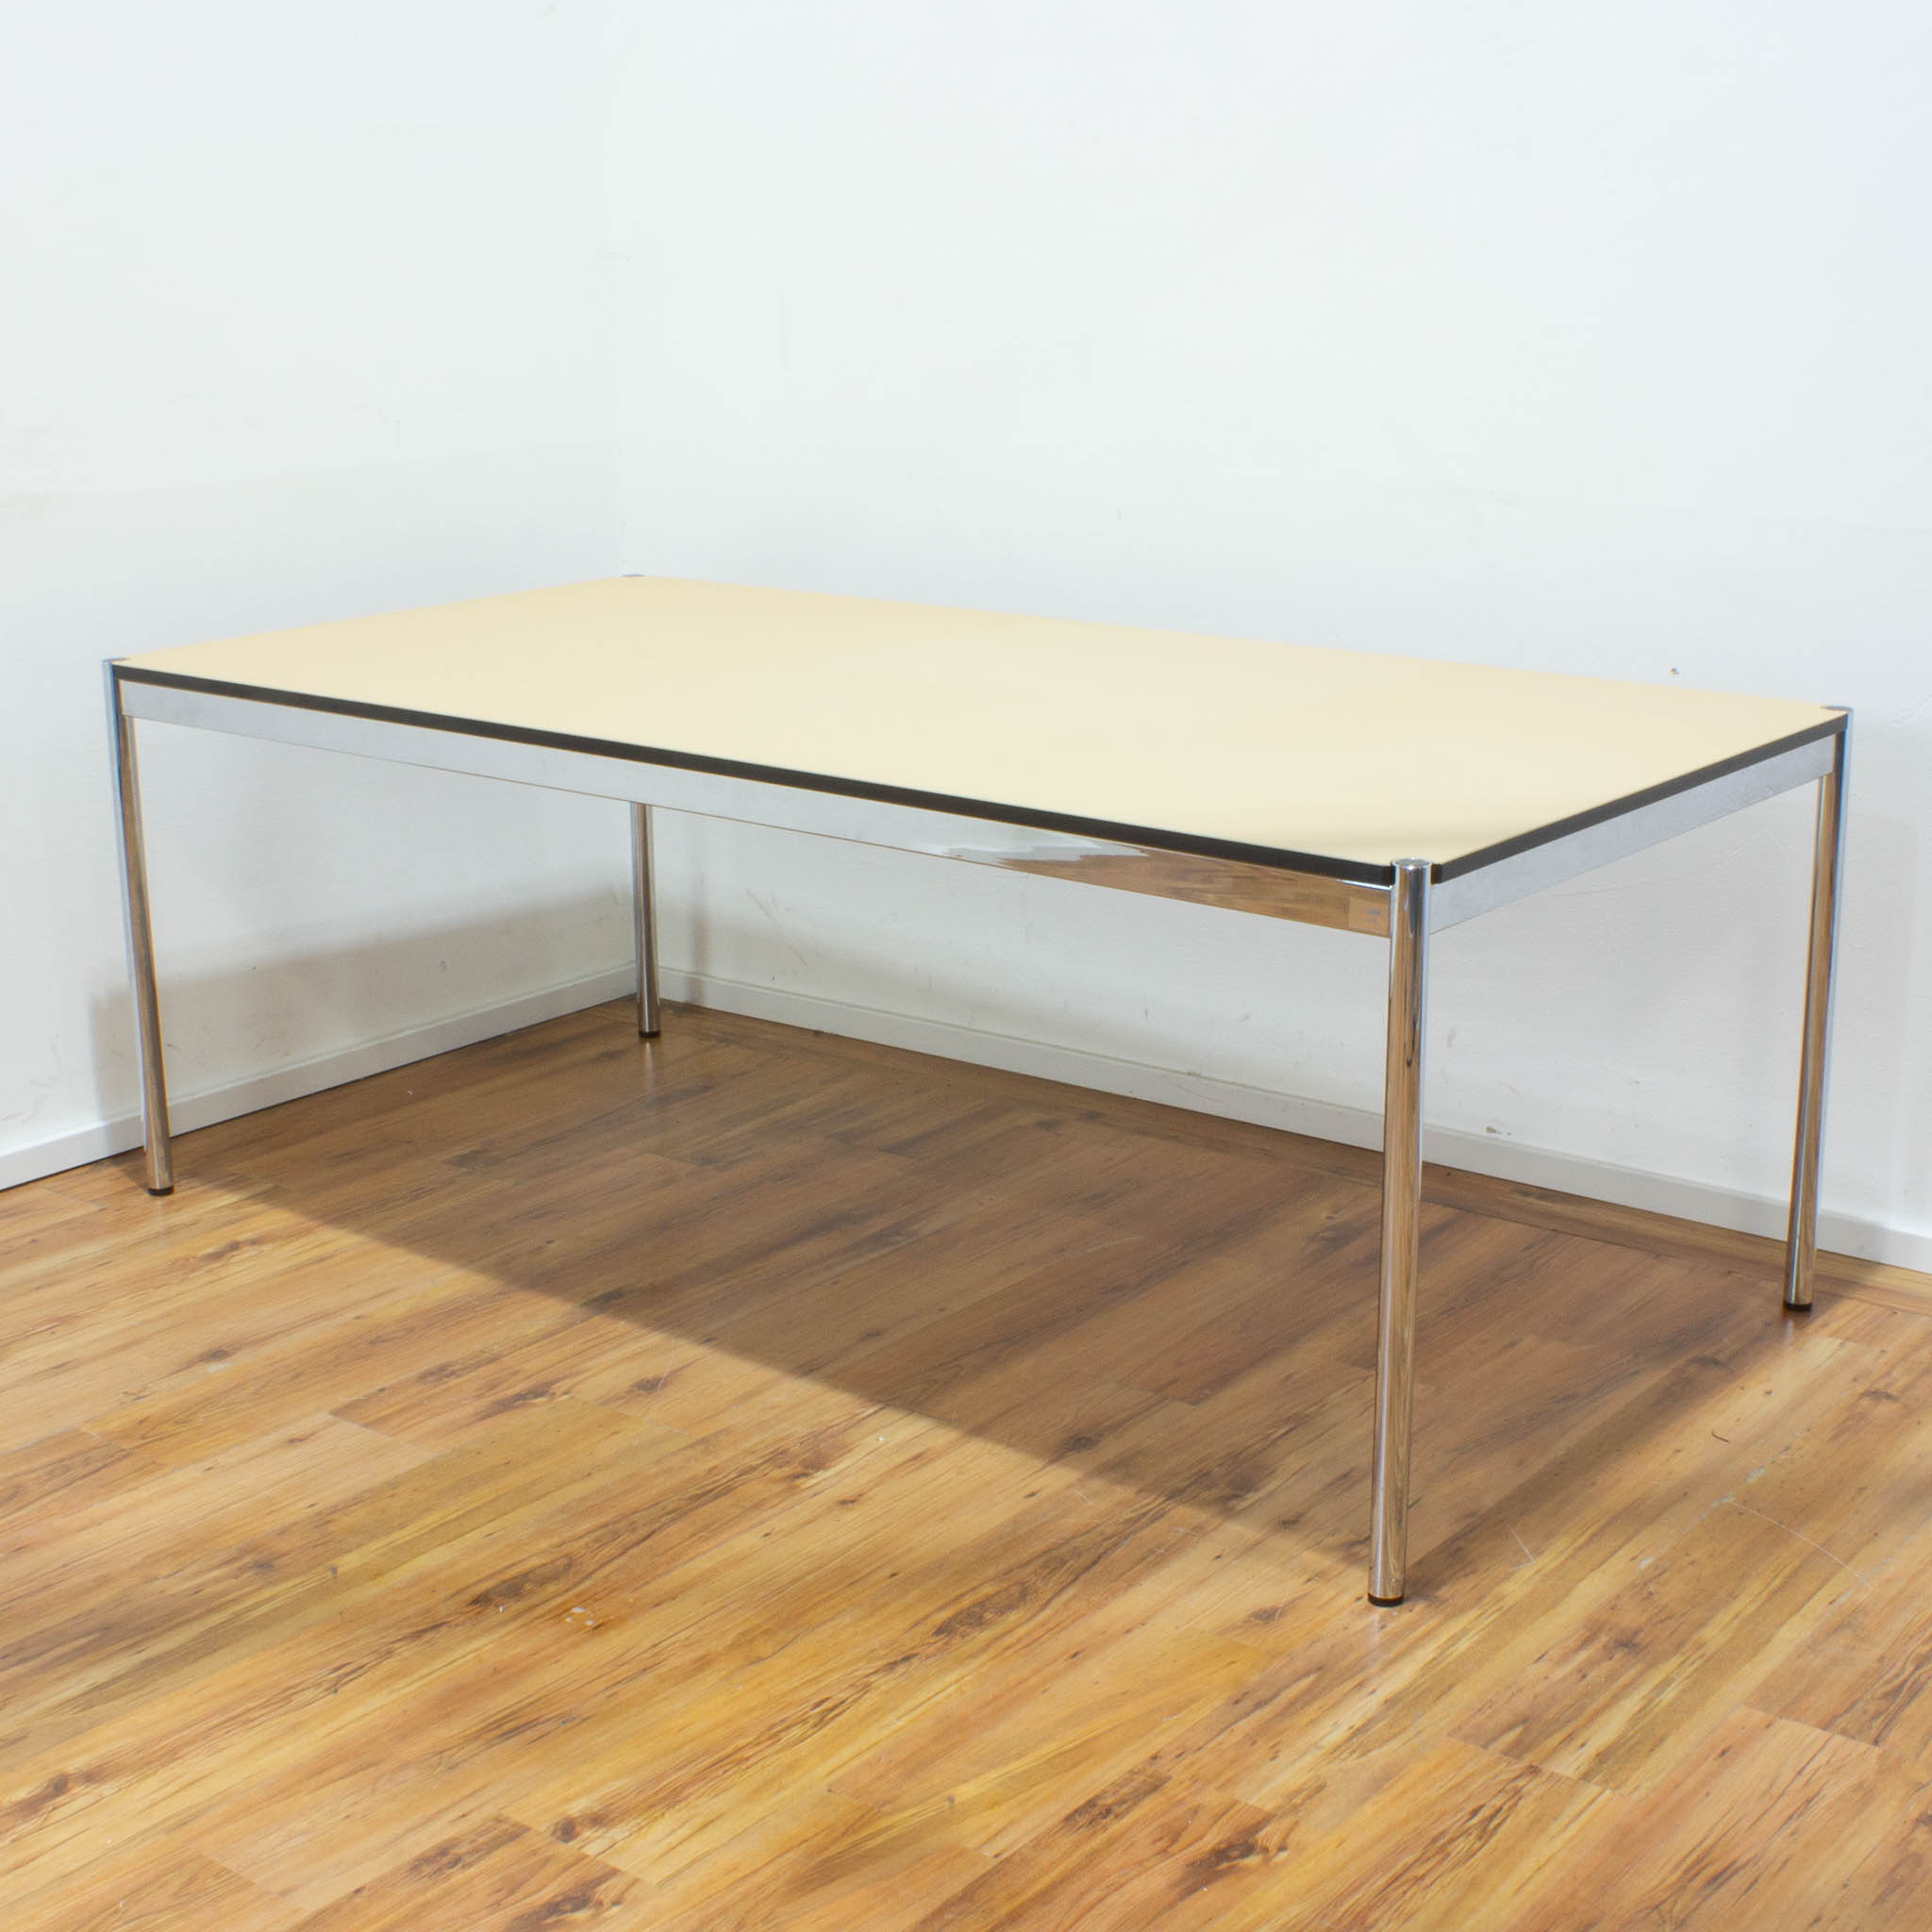 USM Haller Schreibtisch - Tischplatte beige - gebraucht - 200 x 100 cm